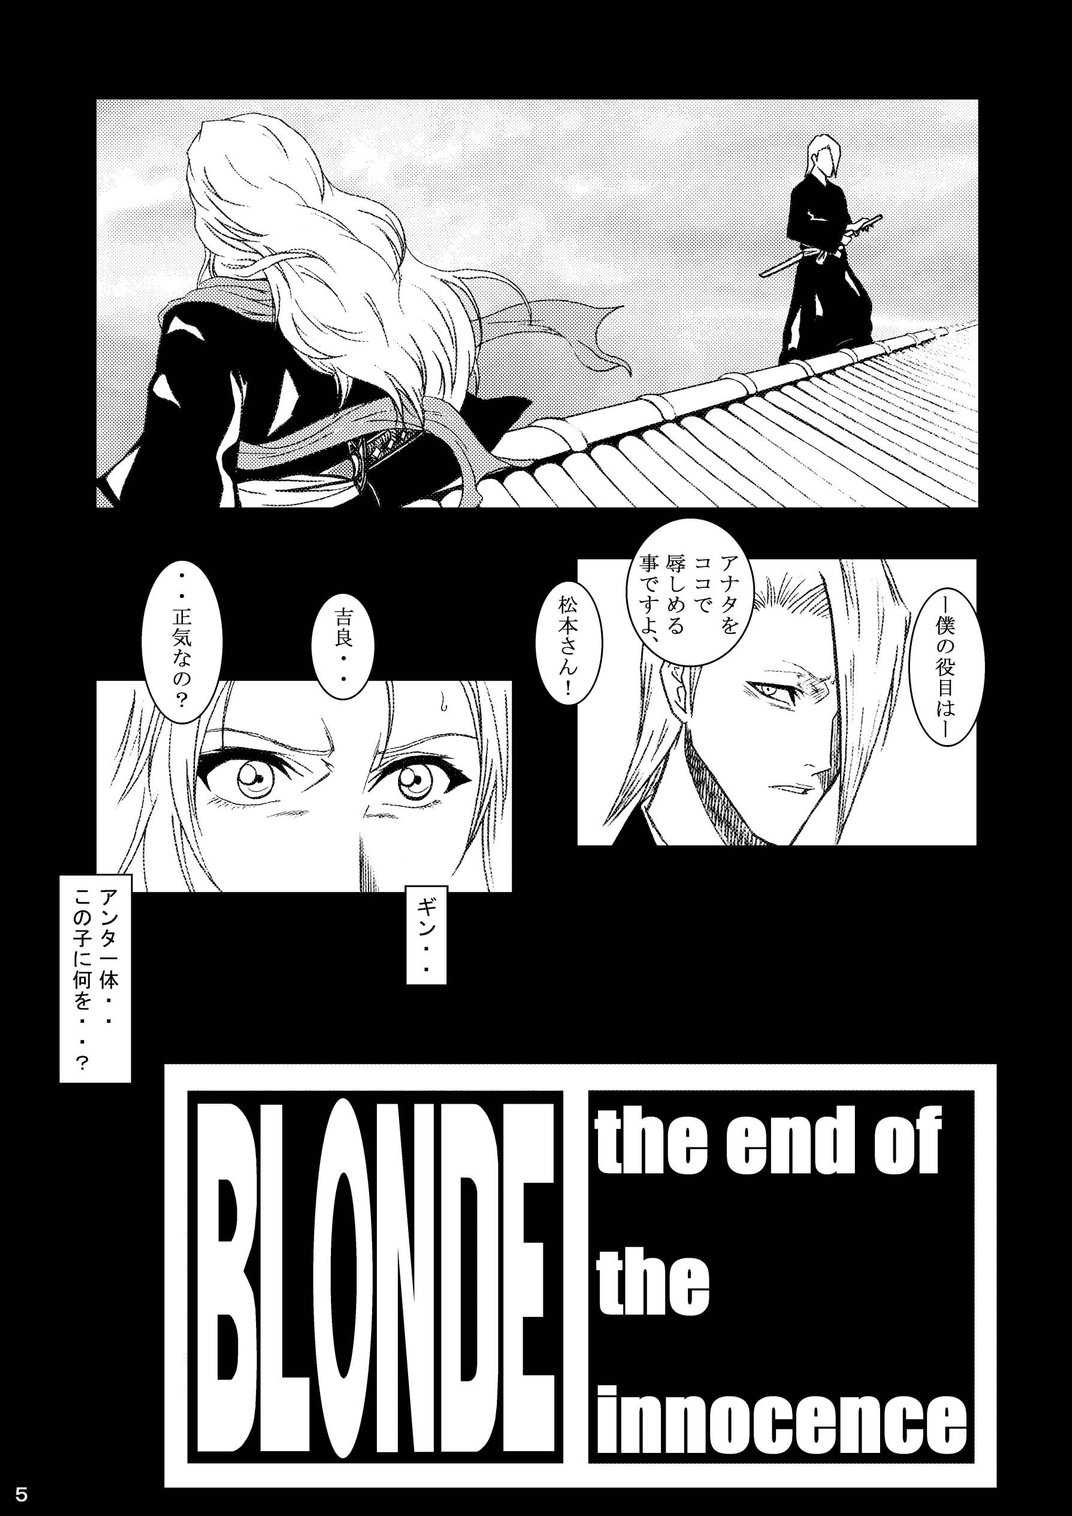 [Bleach] Blonde 